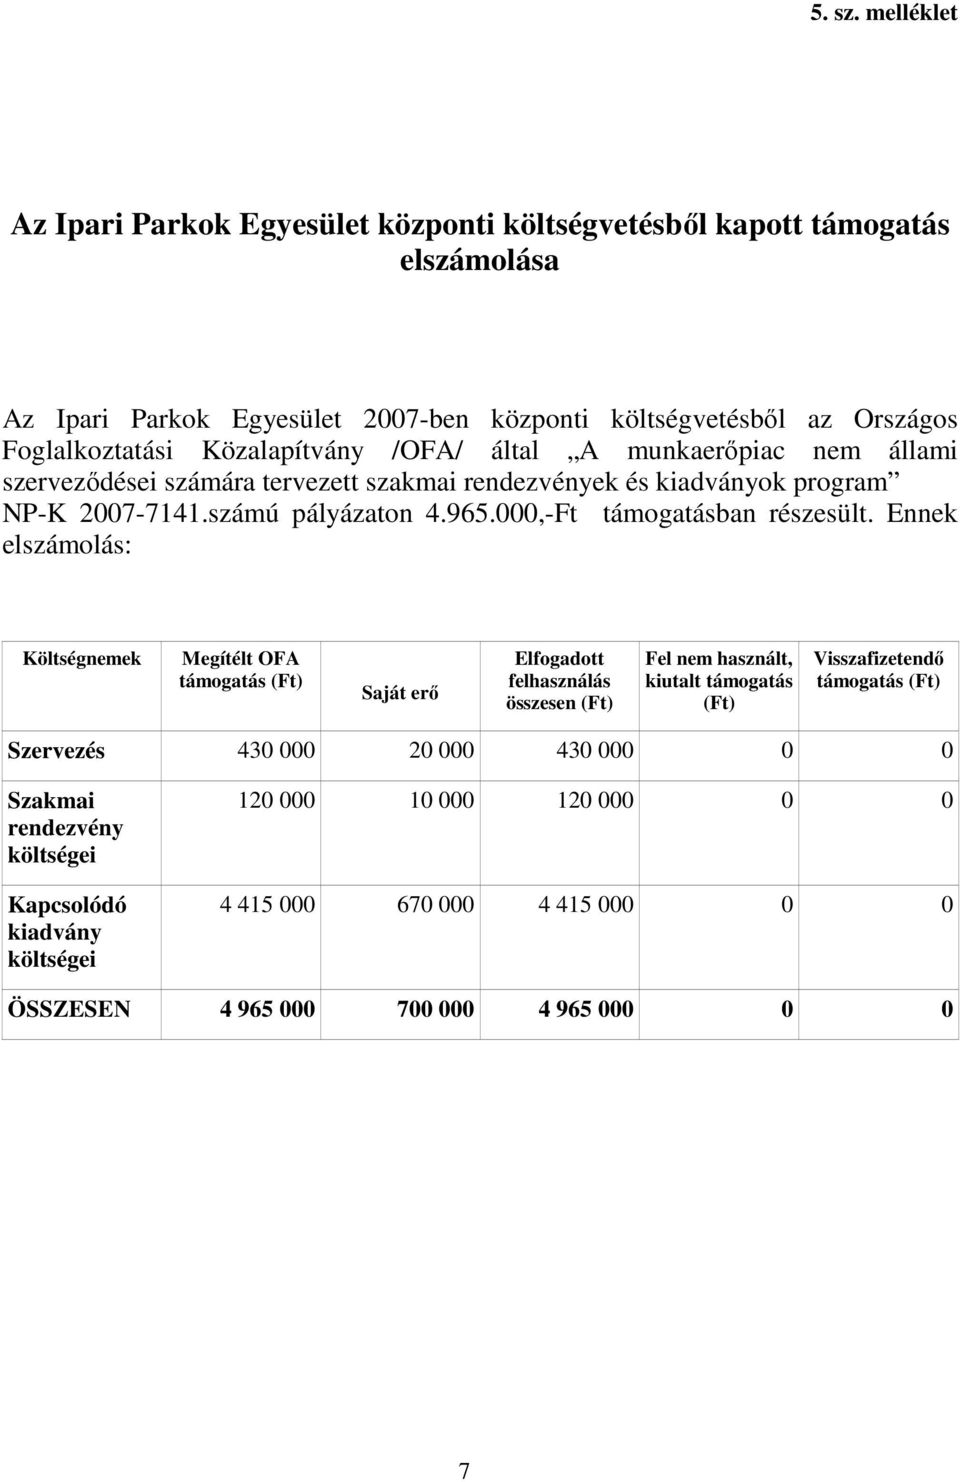 Közalapítvány /OFA/ által A munkaerıpiac nem állami szervezıdései számára tervezett szakmai rendezvények és kiadványok program NP-K 2007-7141.számú pályázaton 4.965.